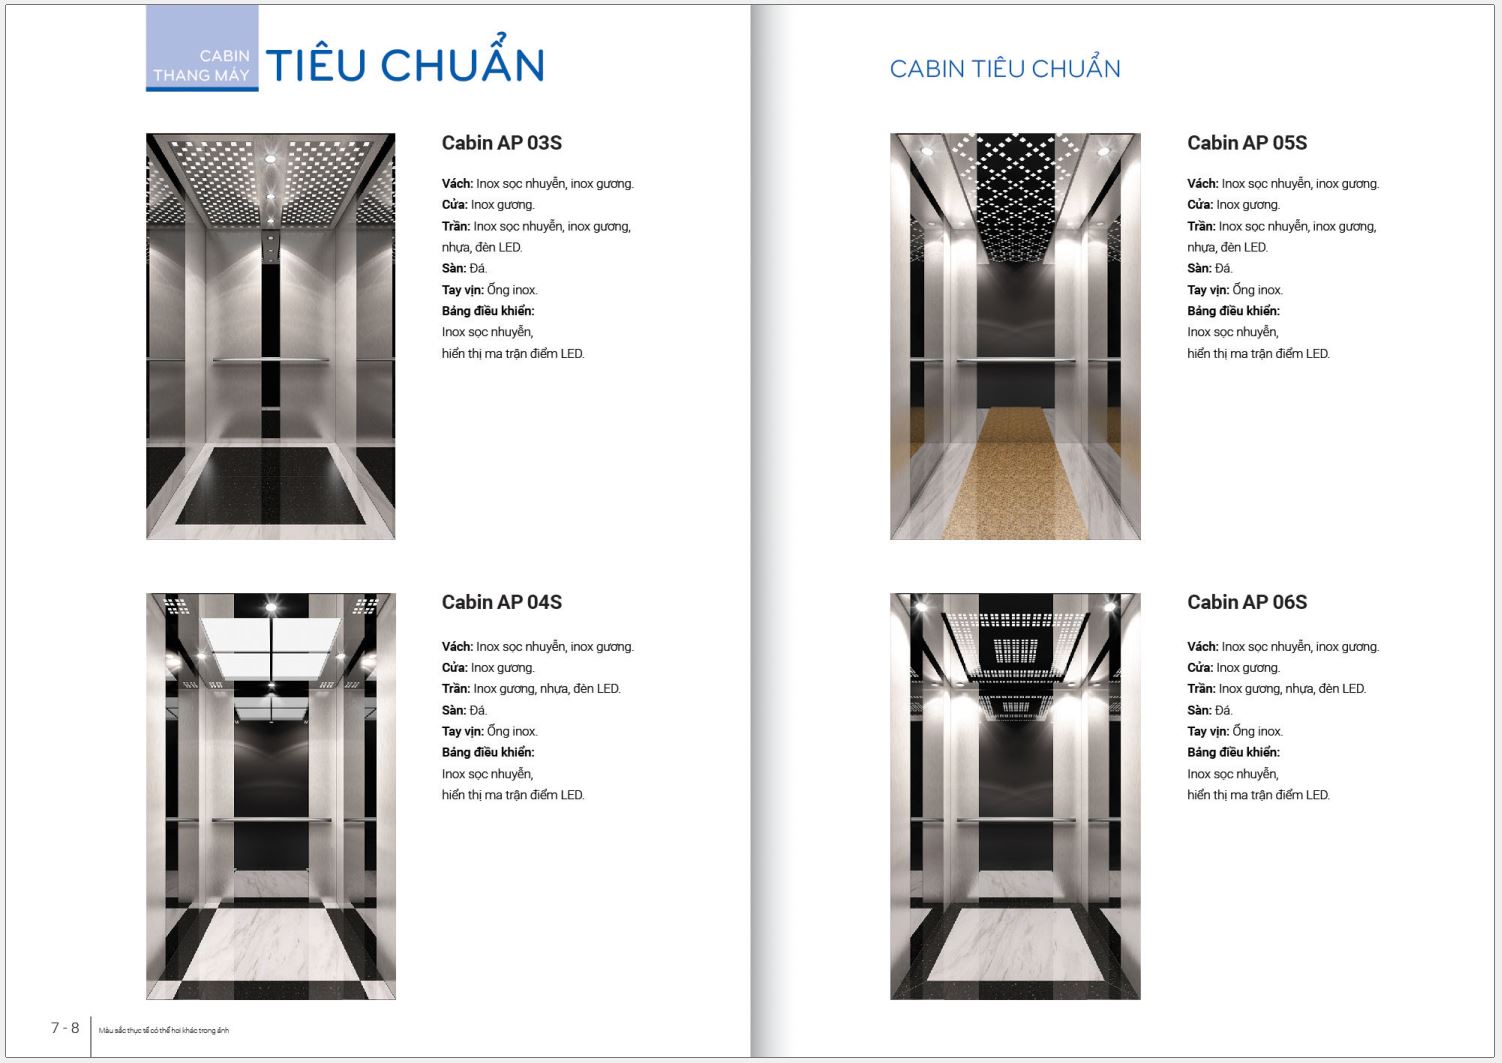 Mẫu Cabin tiêu chuẩn của thang máy Ecofuji